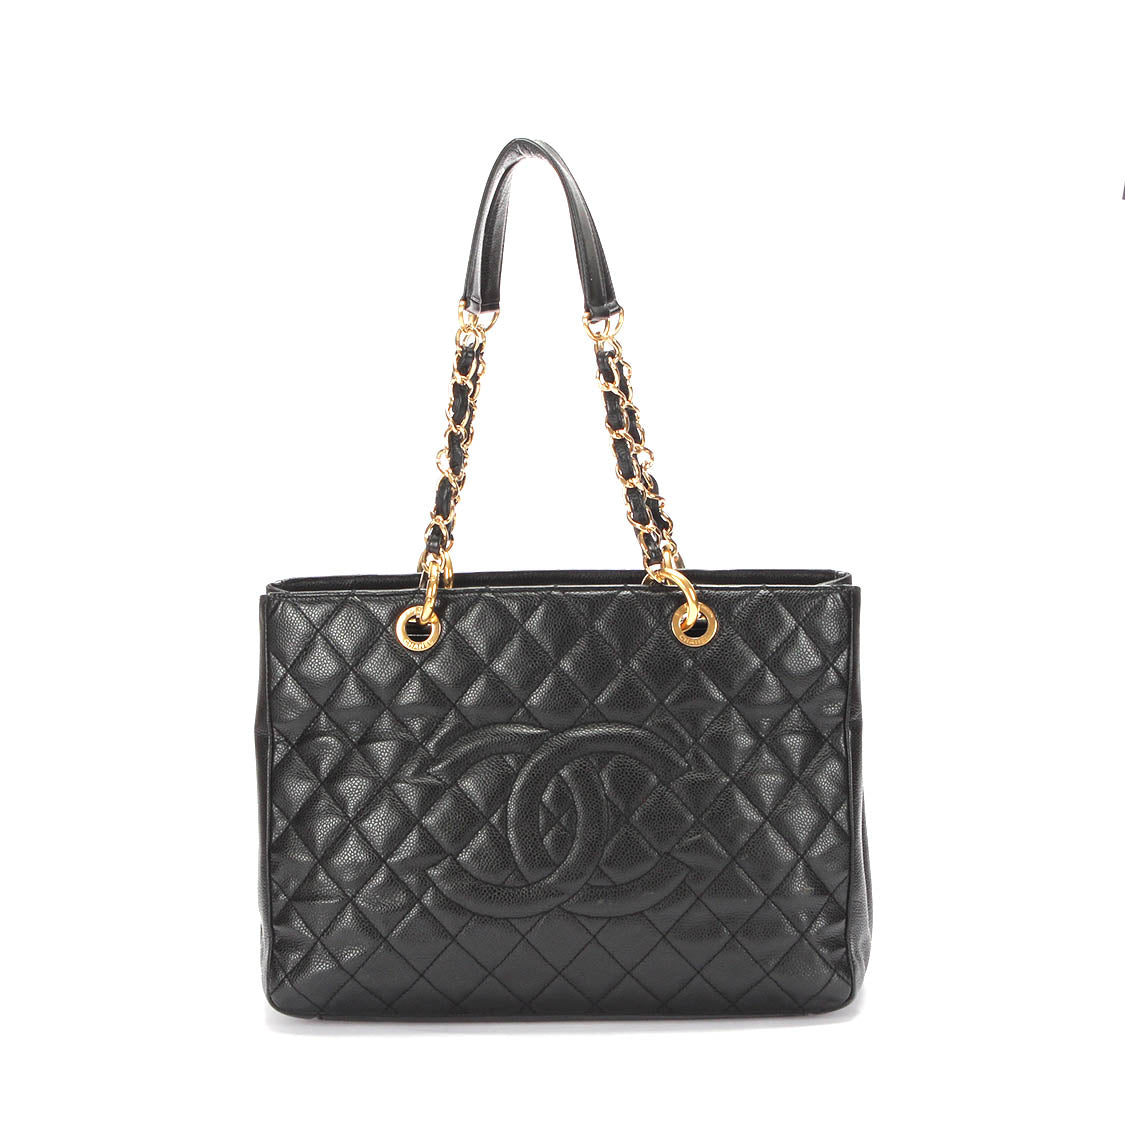 Chanel GST链手提包